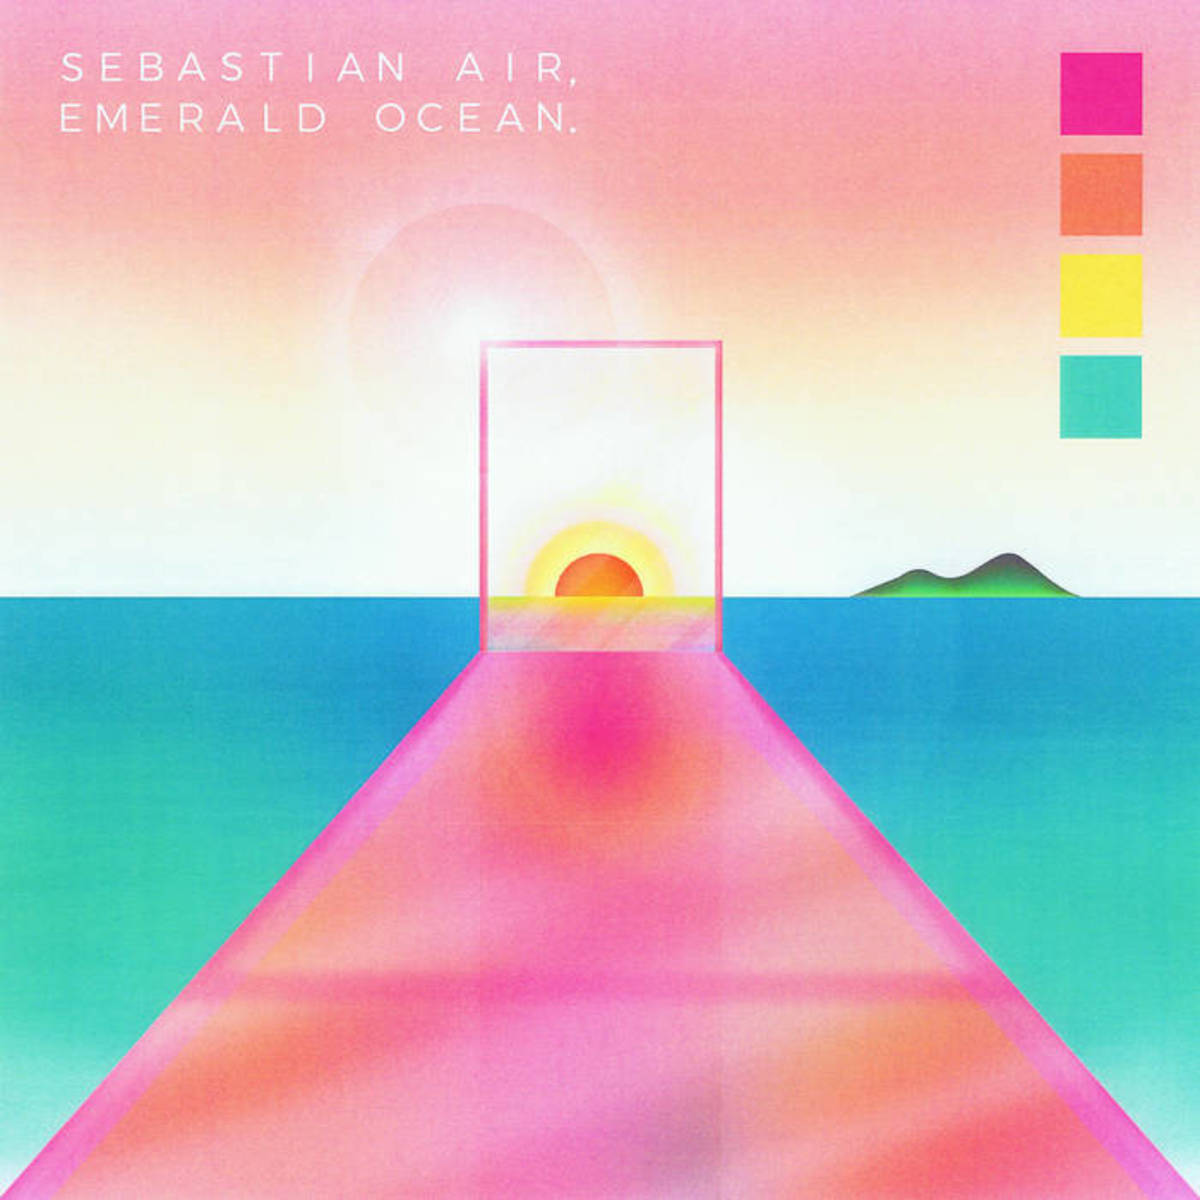 Album cover for Sebastian Air’s album, "Emerald Ocean."